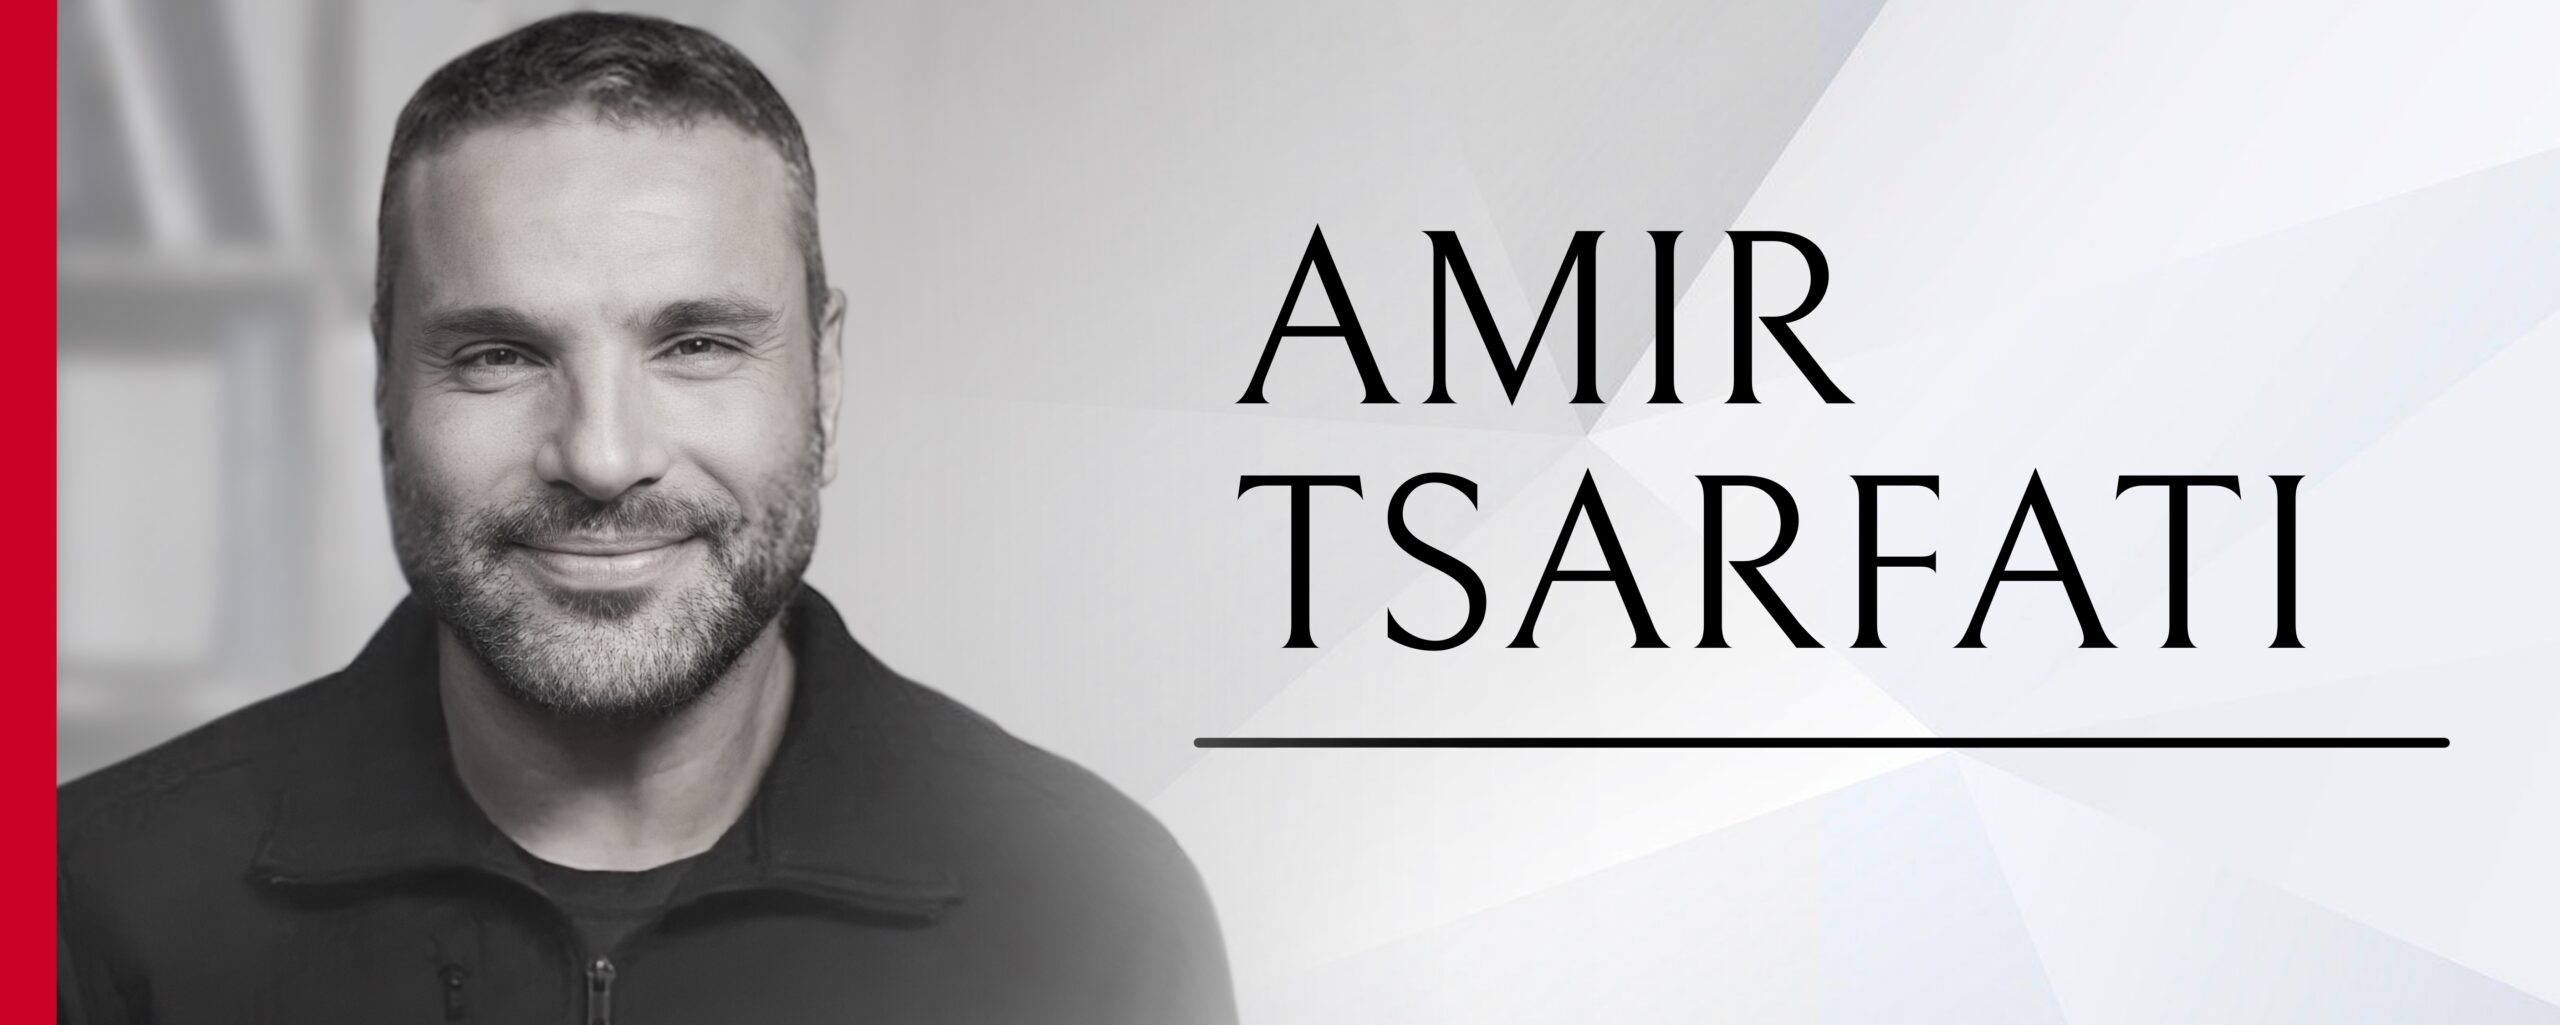 Amir Tsarfati,WORLDVIEW w/ Amir Tsarfati,Worldview